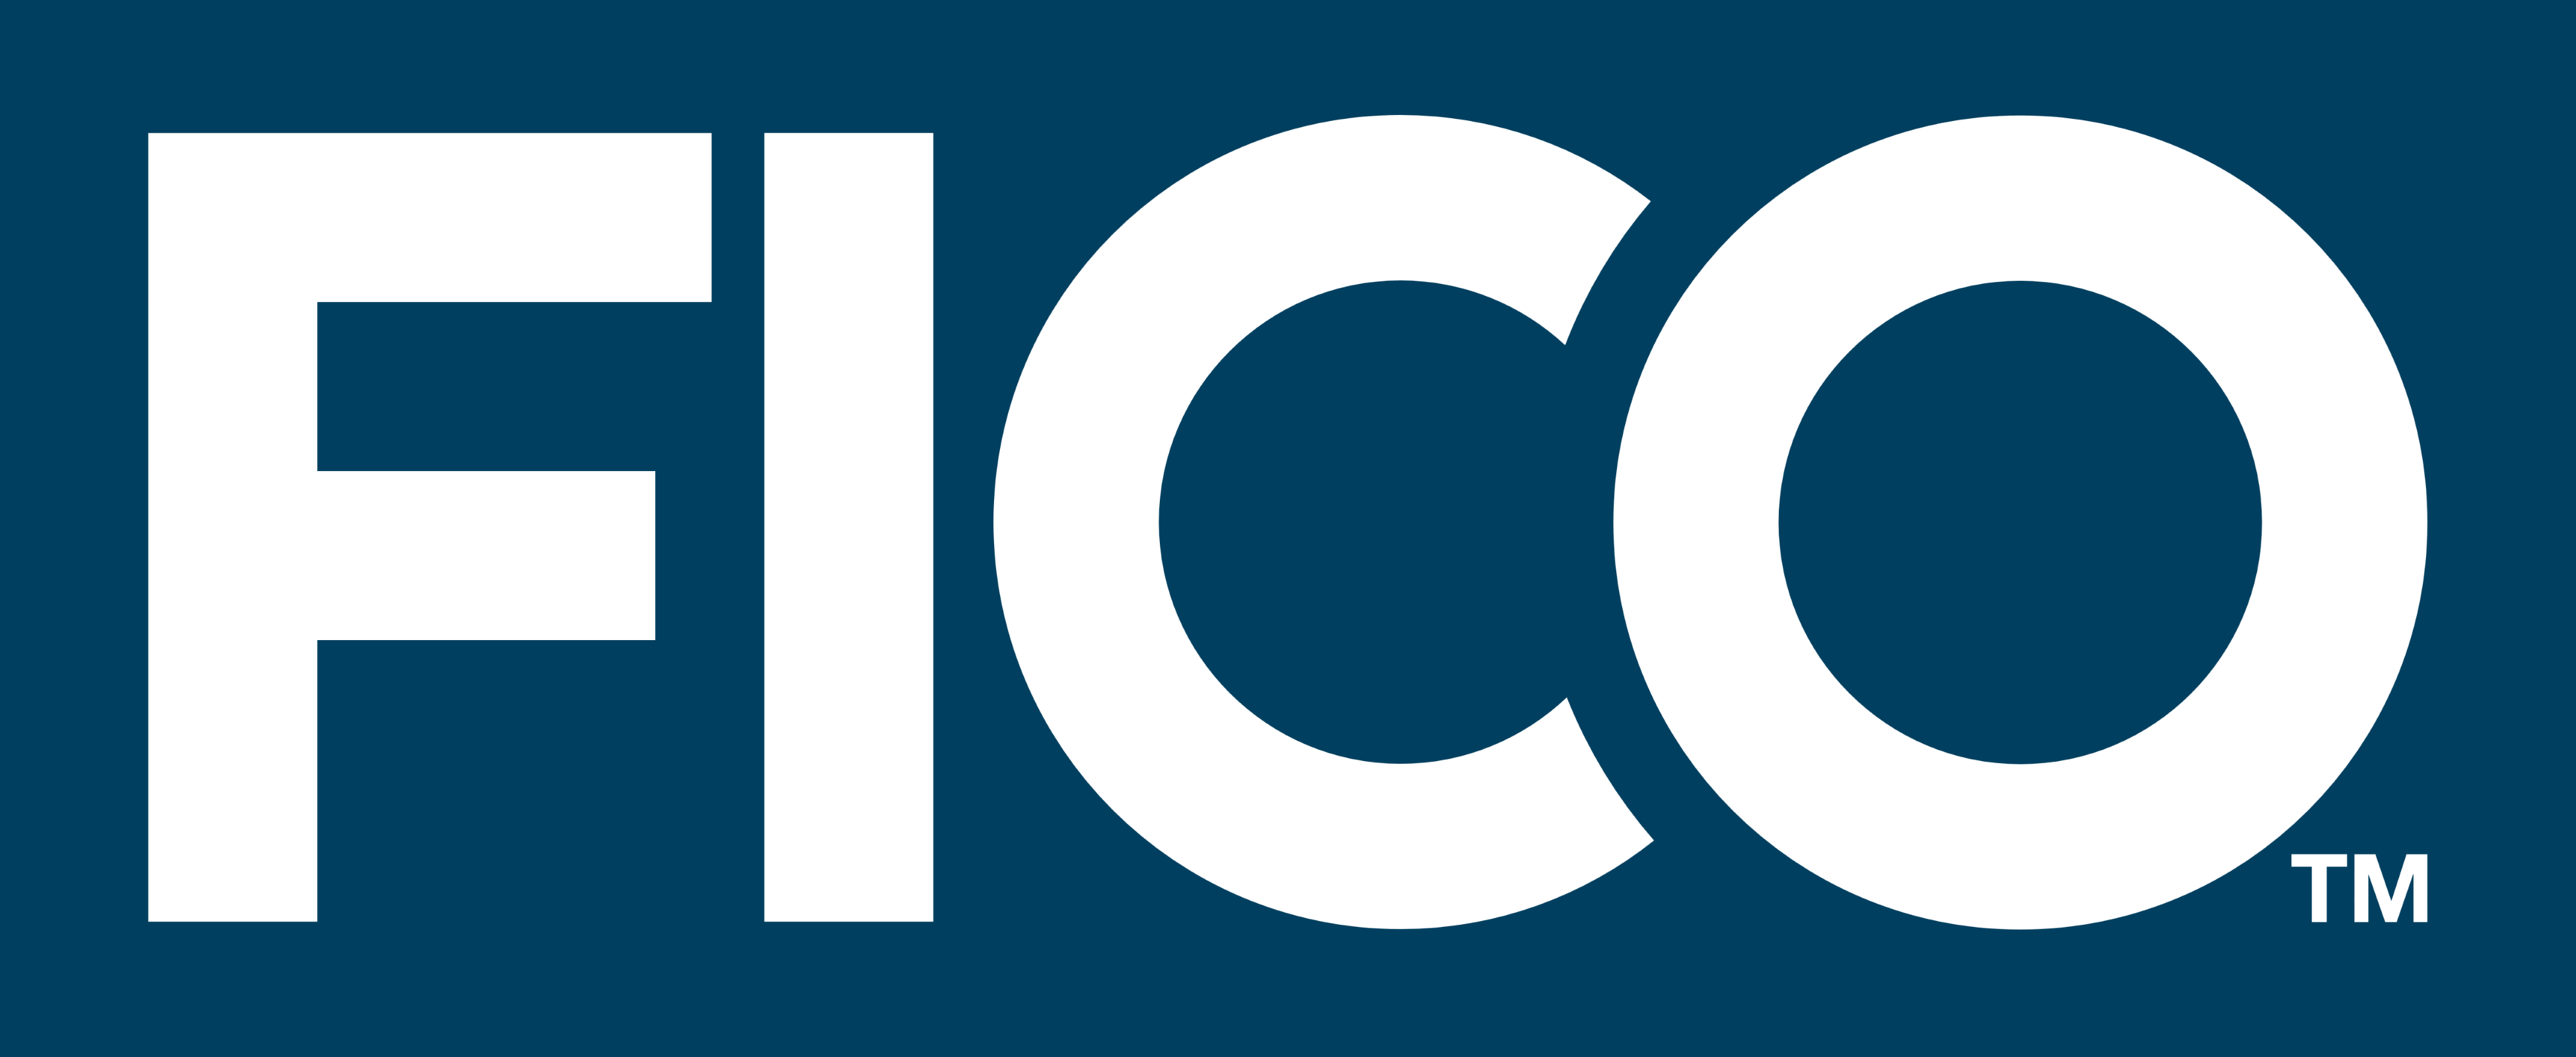 fico company logo